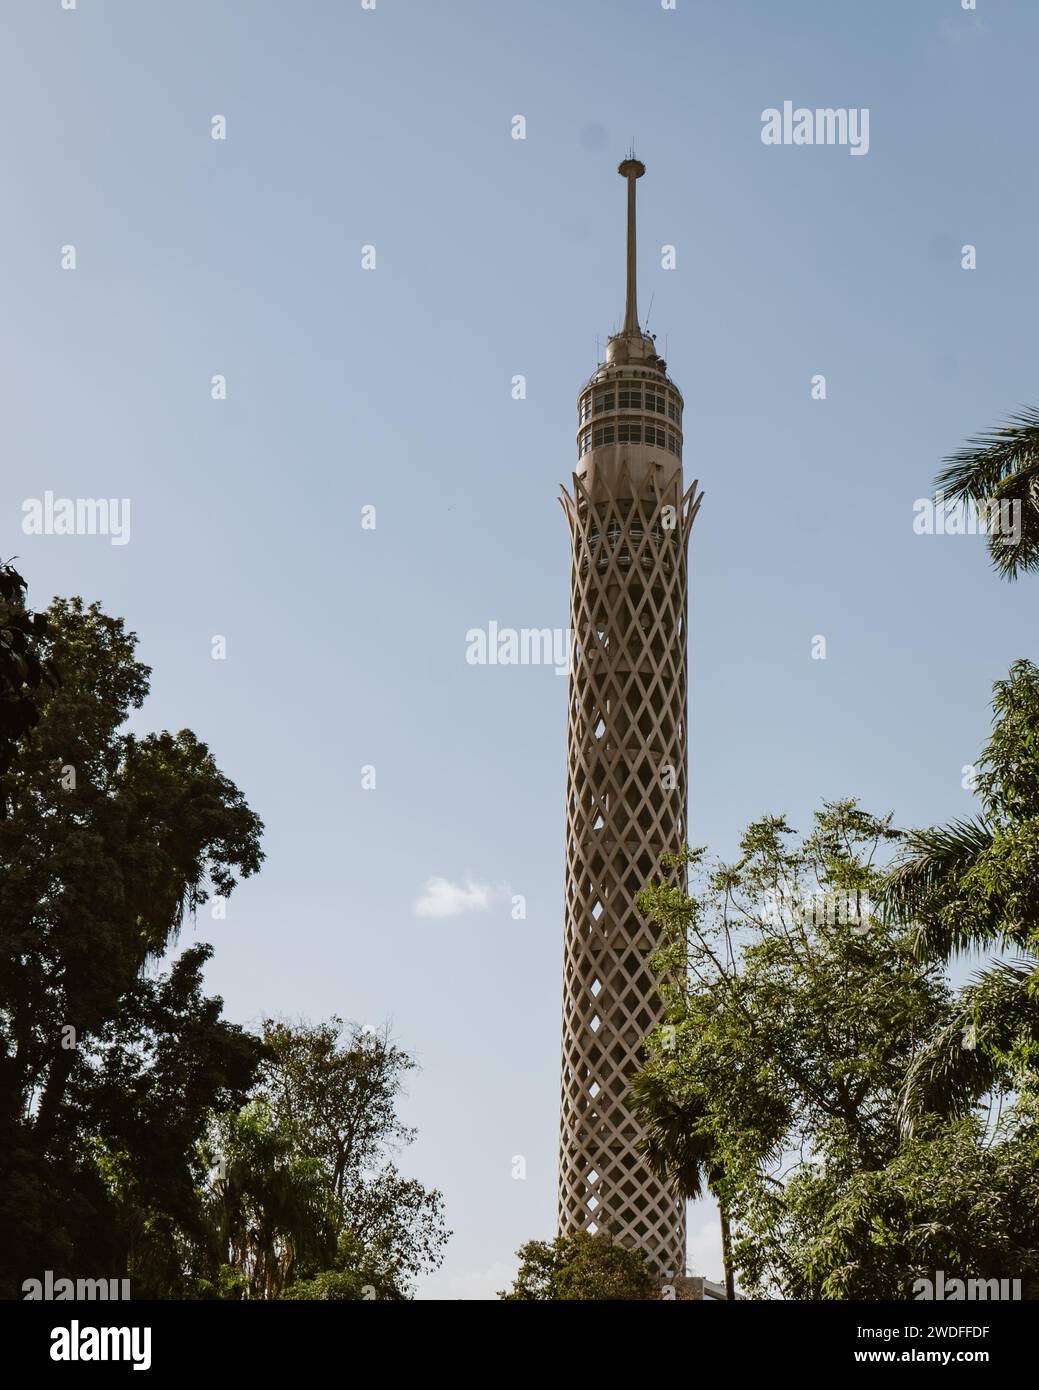 La Tour du Caire, un monument célèbre avec un design en treillis ouvert évoquant une plante de lotus pharaonique, un symbole emblématique de l'Egypte ancienne. Banque D'Images